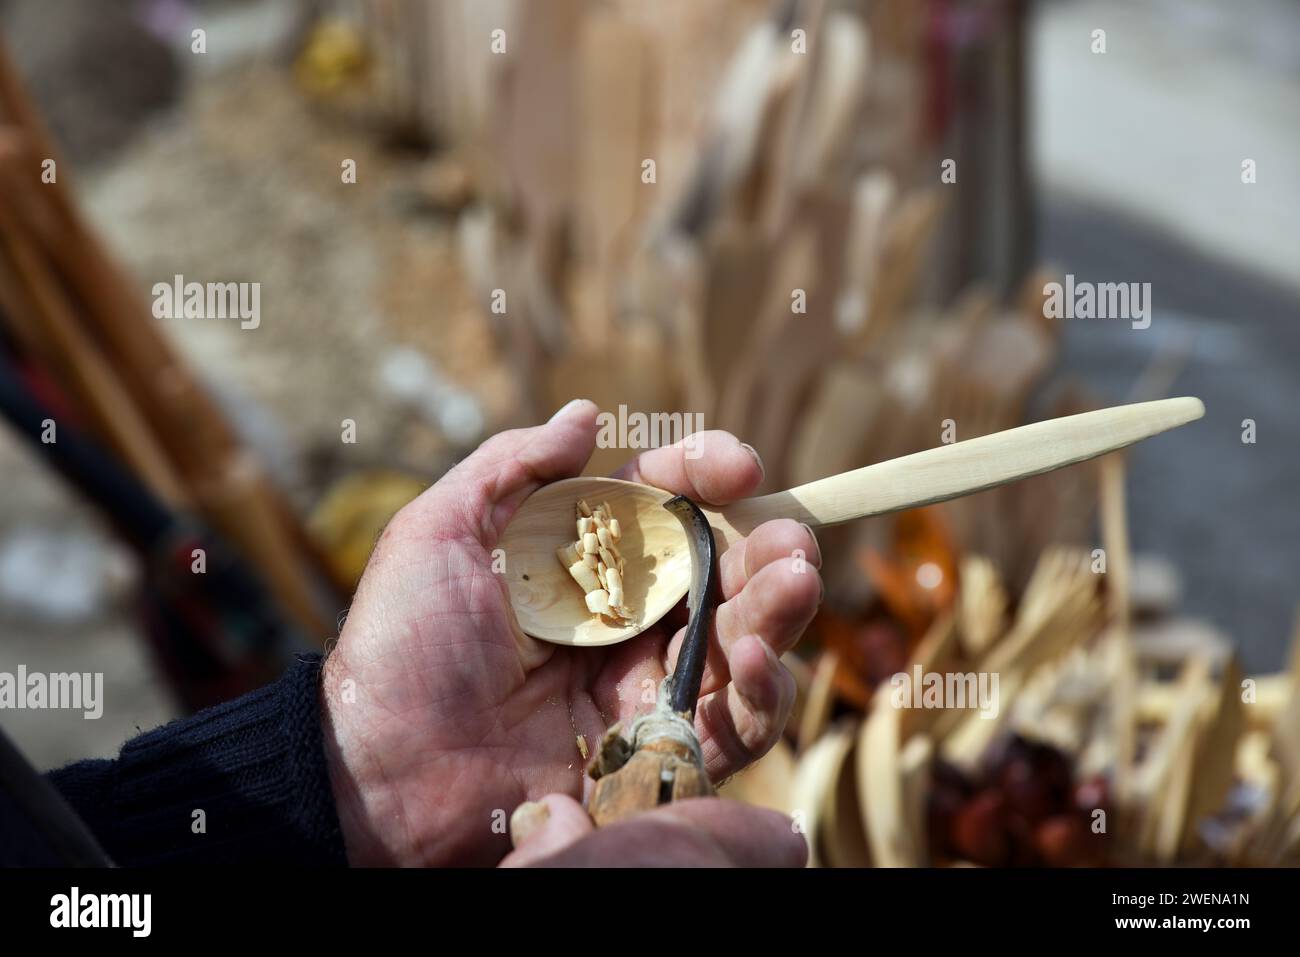 Ein Graveur schnitzt einen Holzlöffel mit einem Meißel an seiner Hand nach traditioneller Methode. Verfahren zur Herstellung eines geschnitzten Holzlöffels. Stockfoto